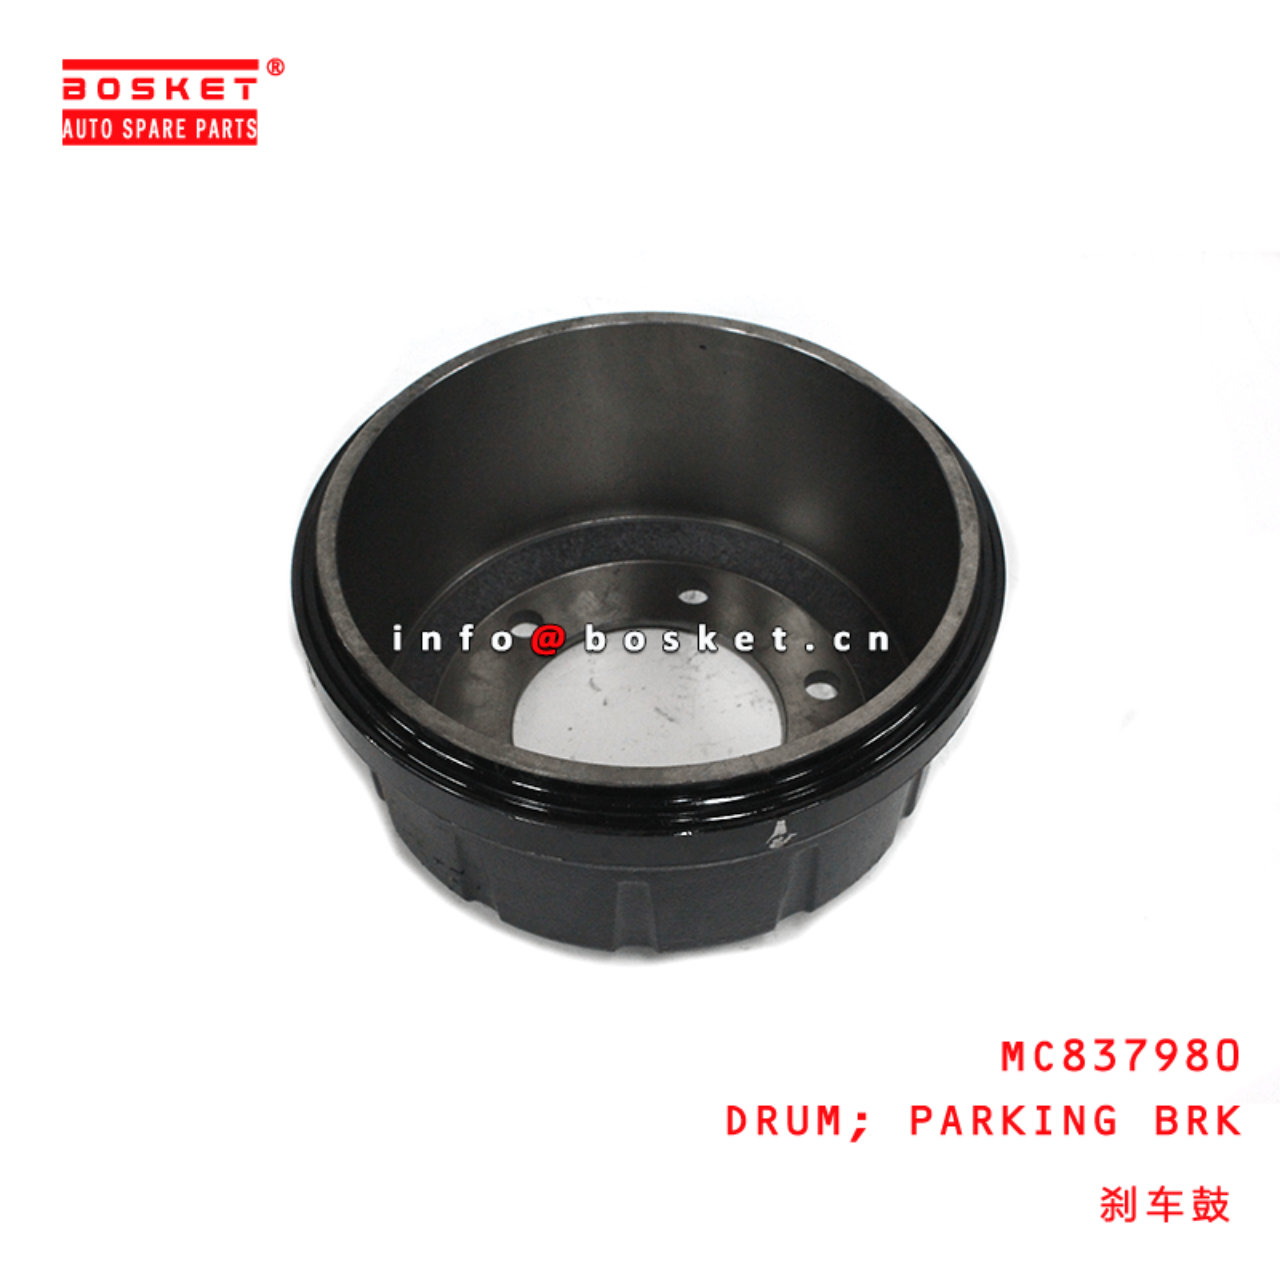  MC837980 Parking Brake Drum Suitable For MITSUBISHI FUSO